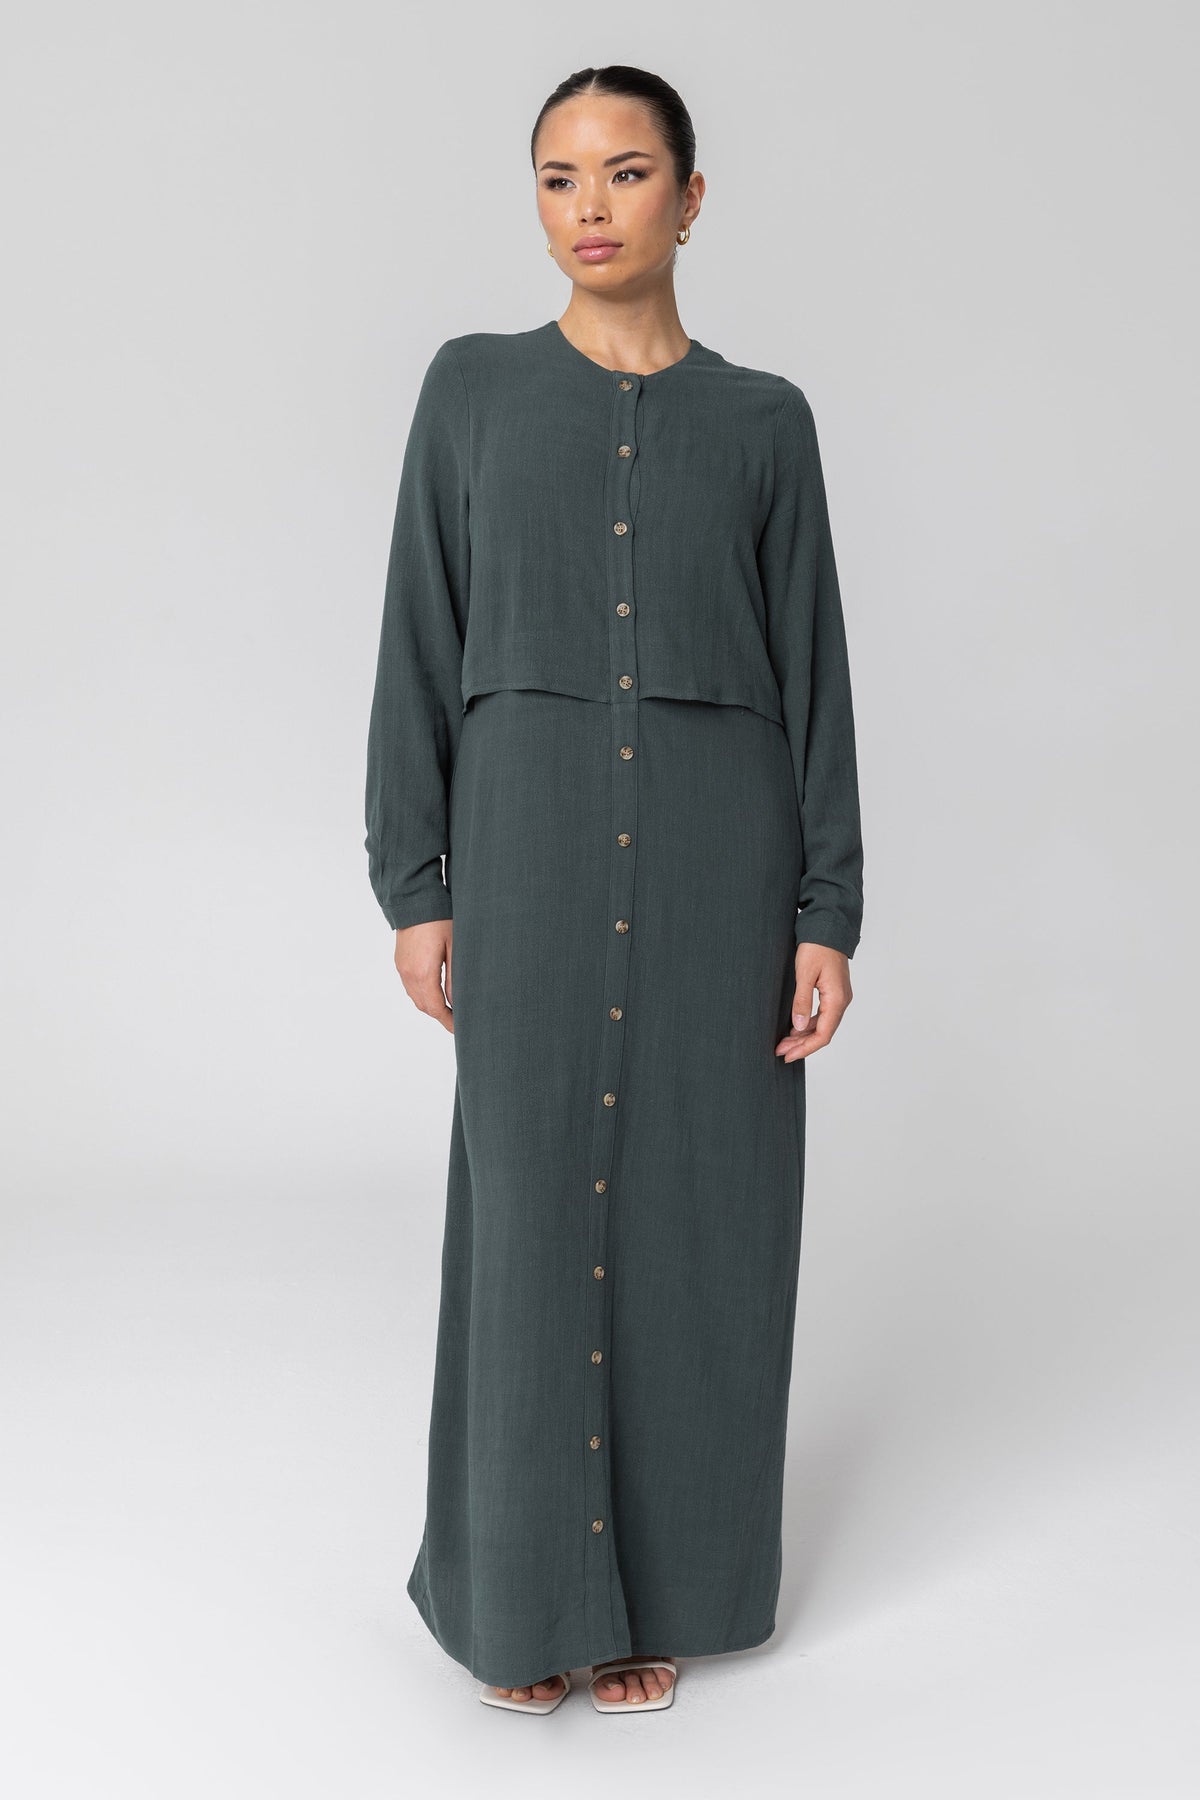 Sabah Cotton Linen Overlay Maxi Shirt Dress - Teal epschoolboard 